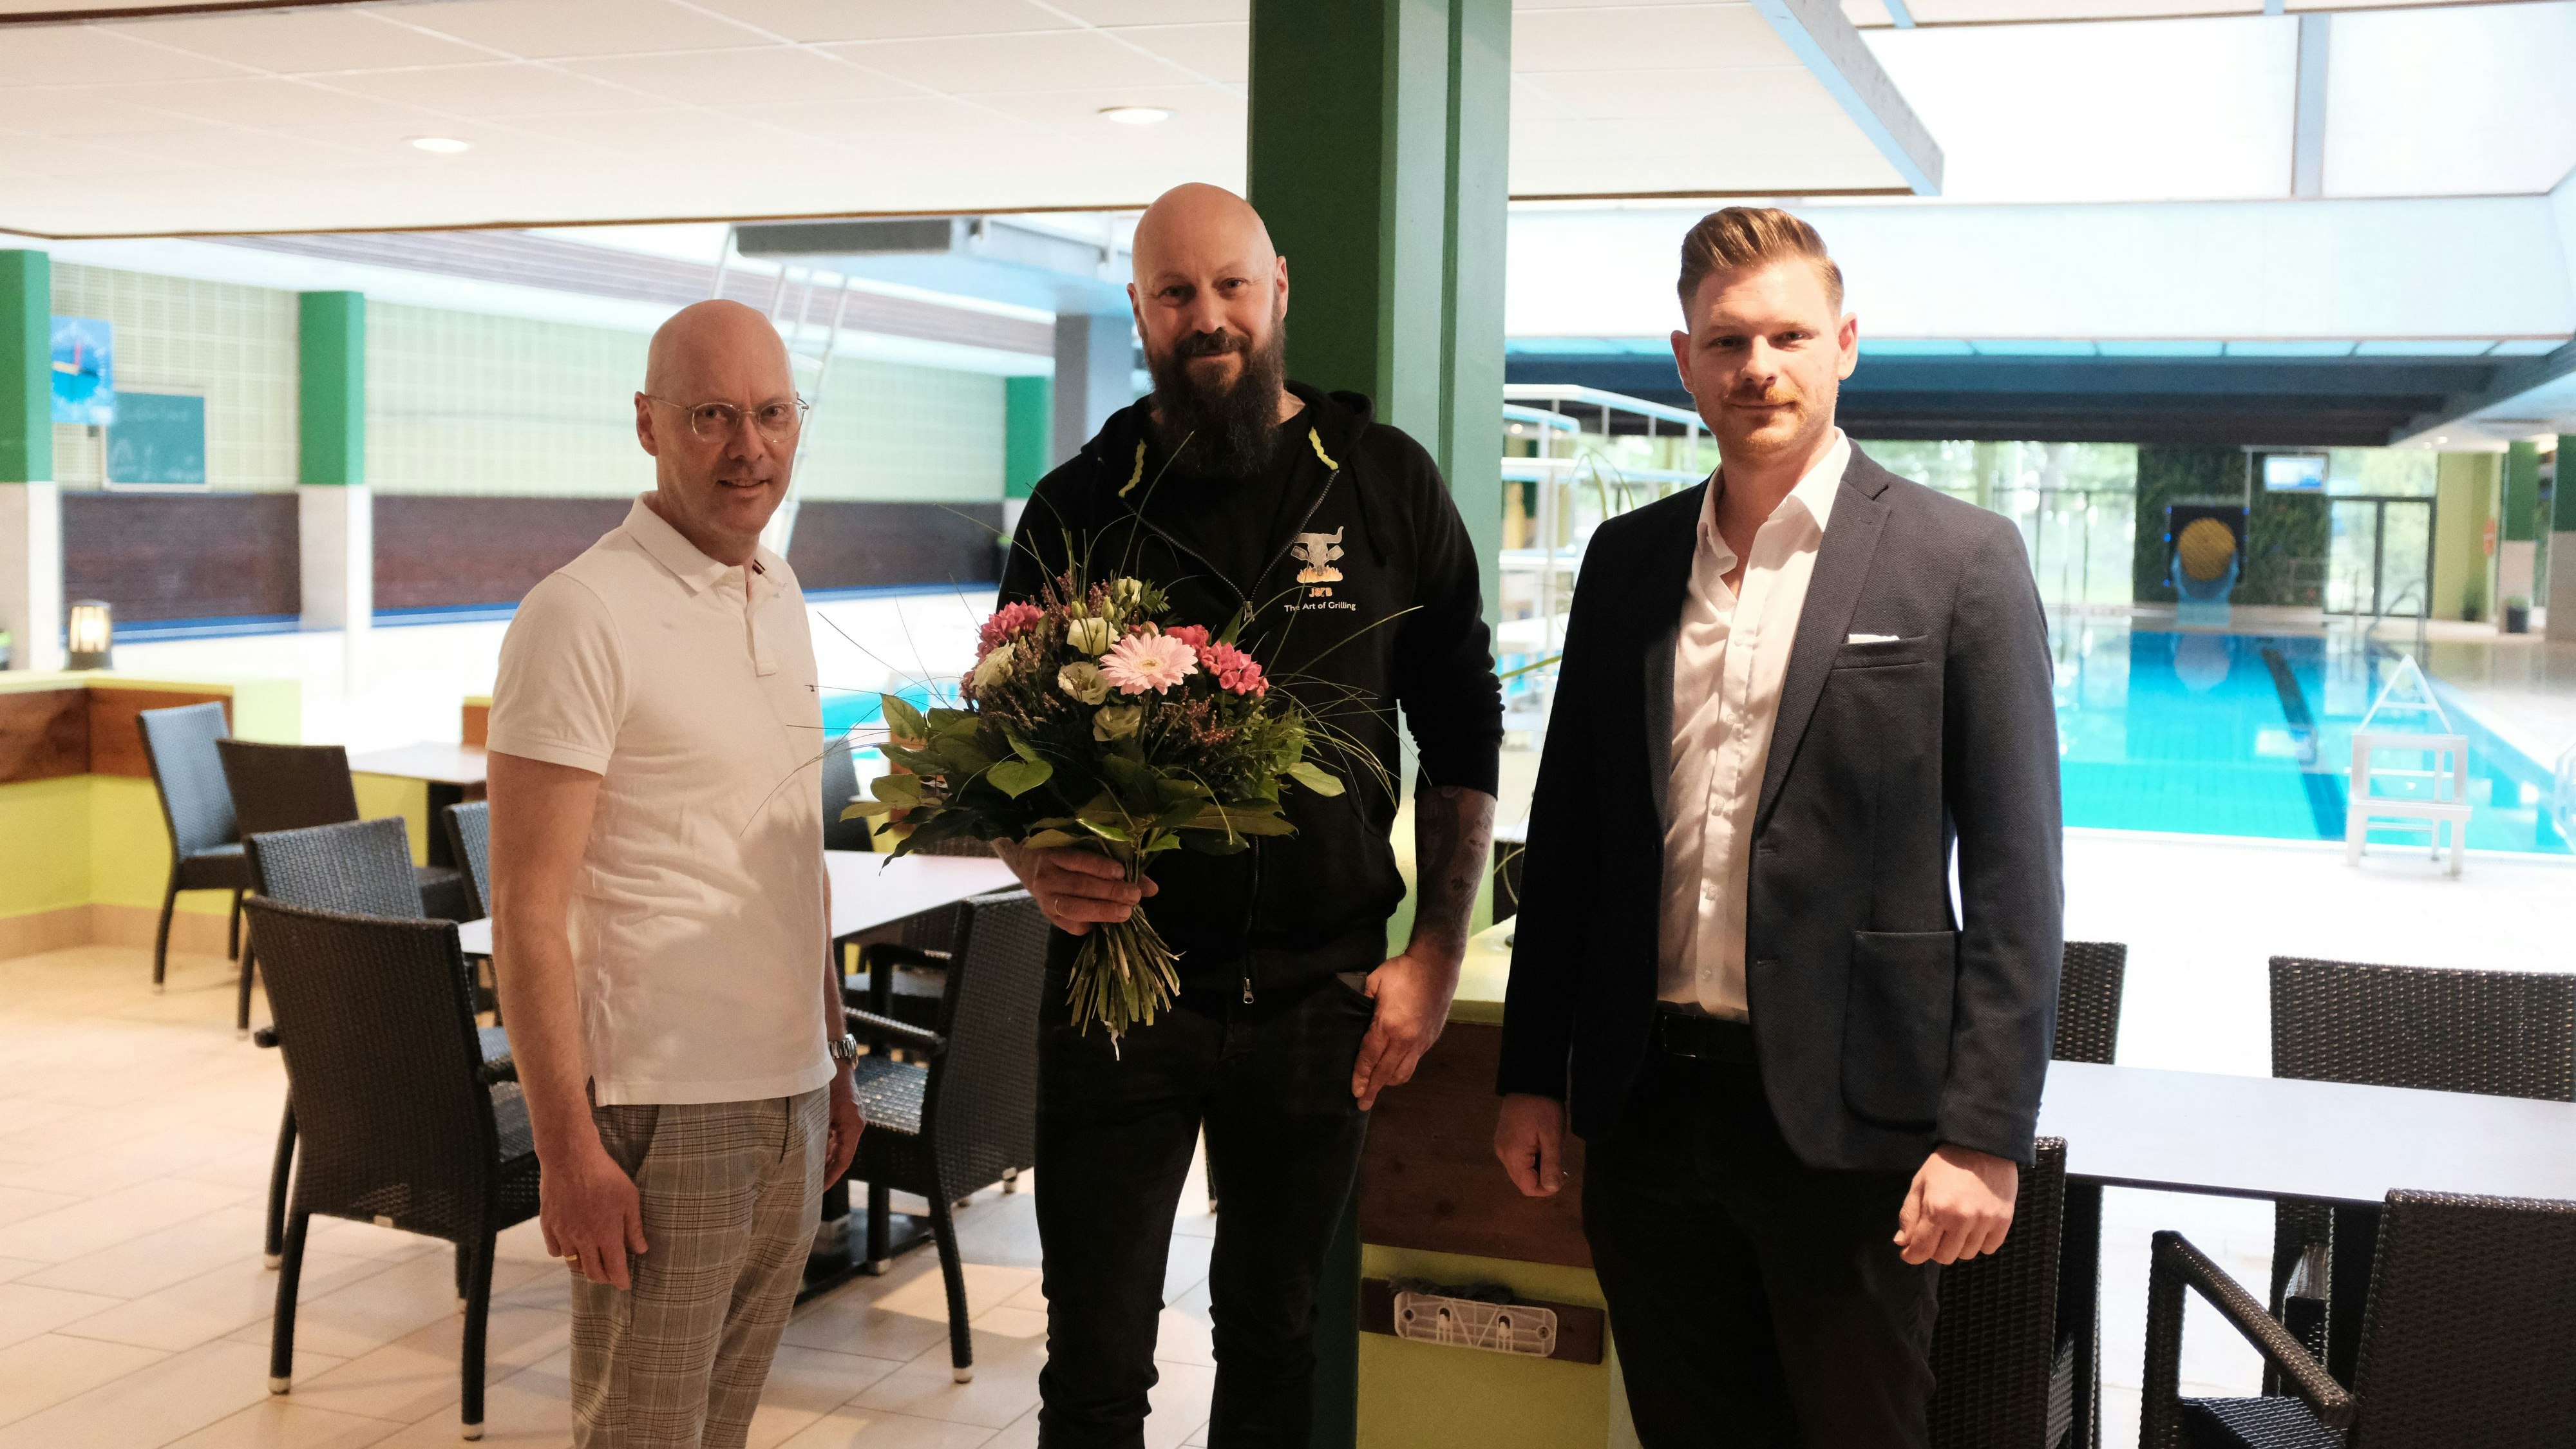 Hoffen auf eine erfolgreiche Zusammenarbeit: Bürgermeister Neidhard Varnhon (links), Gastronom Jürgen Büter und Soestebad-Betriebsleiter Bastian Tegenkamp. Foto: Niemeyer